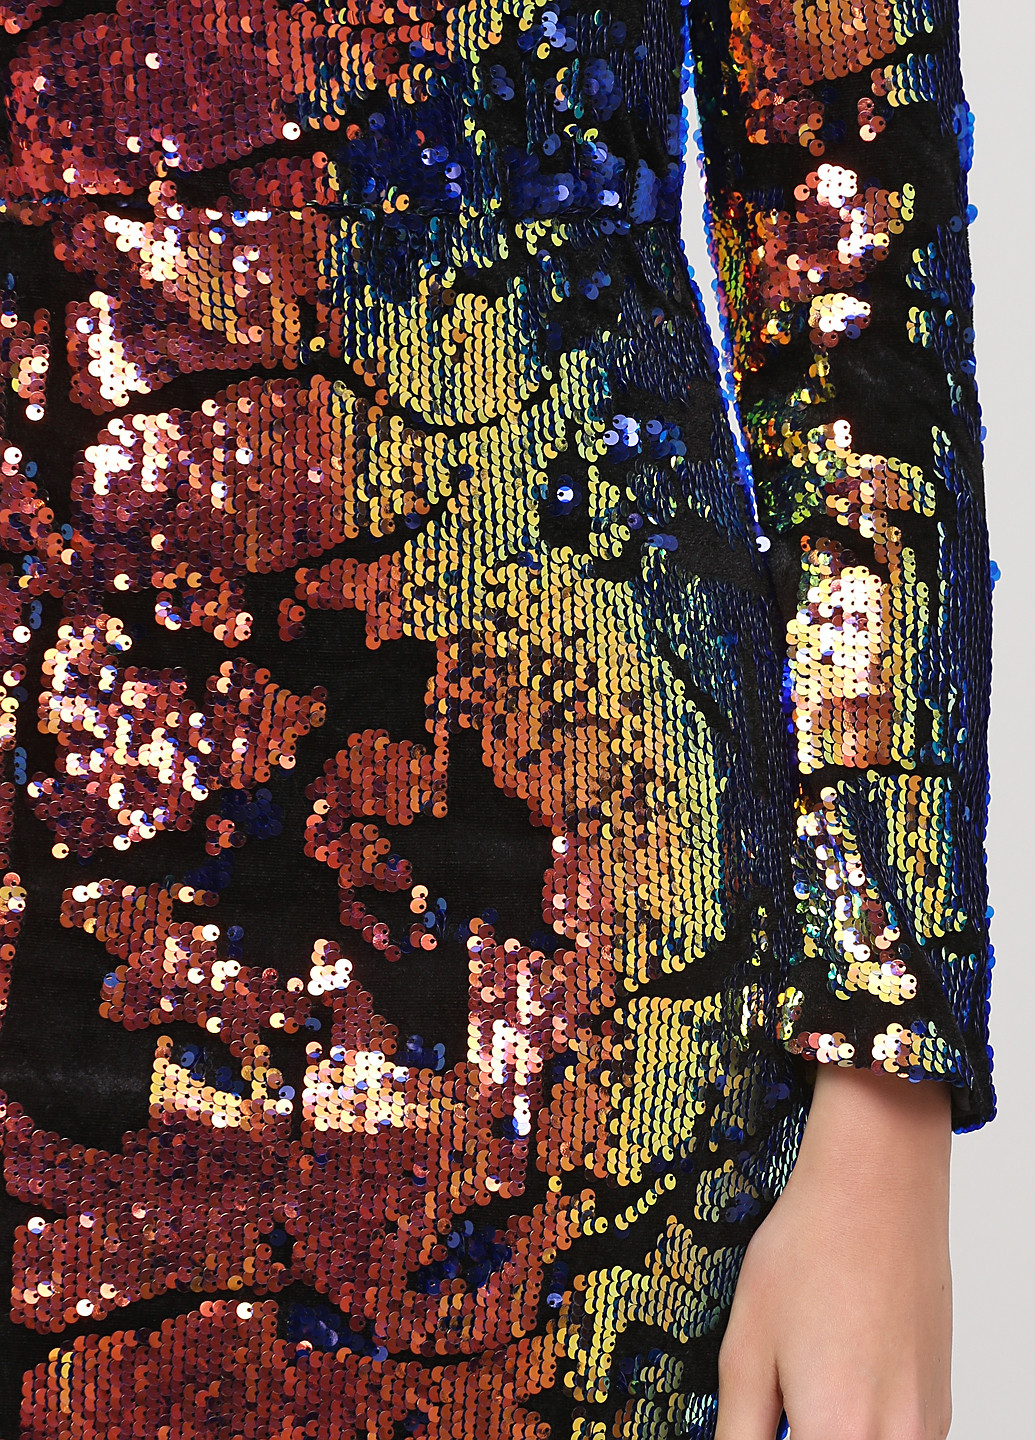 Комбинированное коктейльное платье футляр Collection IRL с абстрактным узором